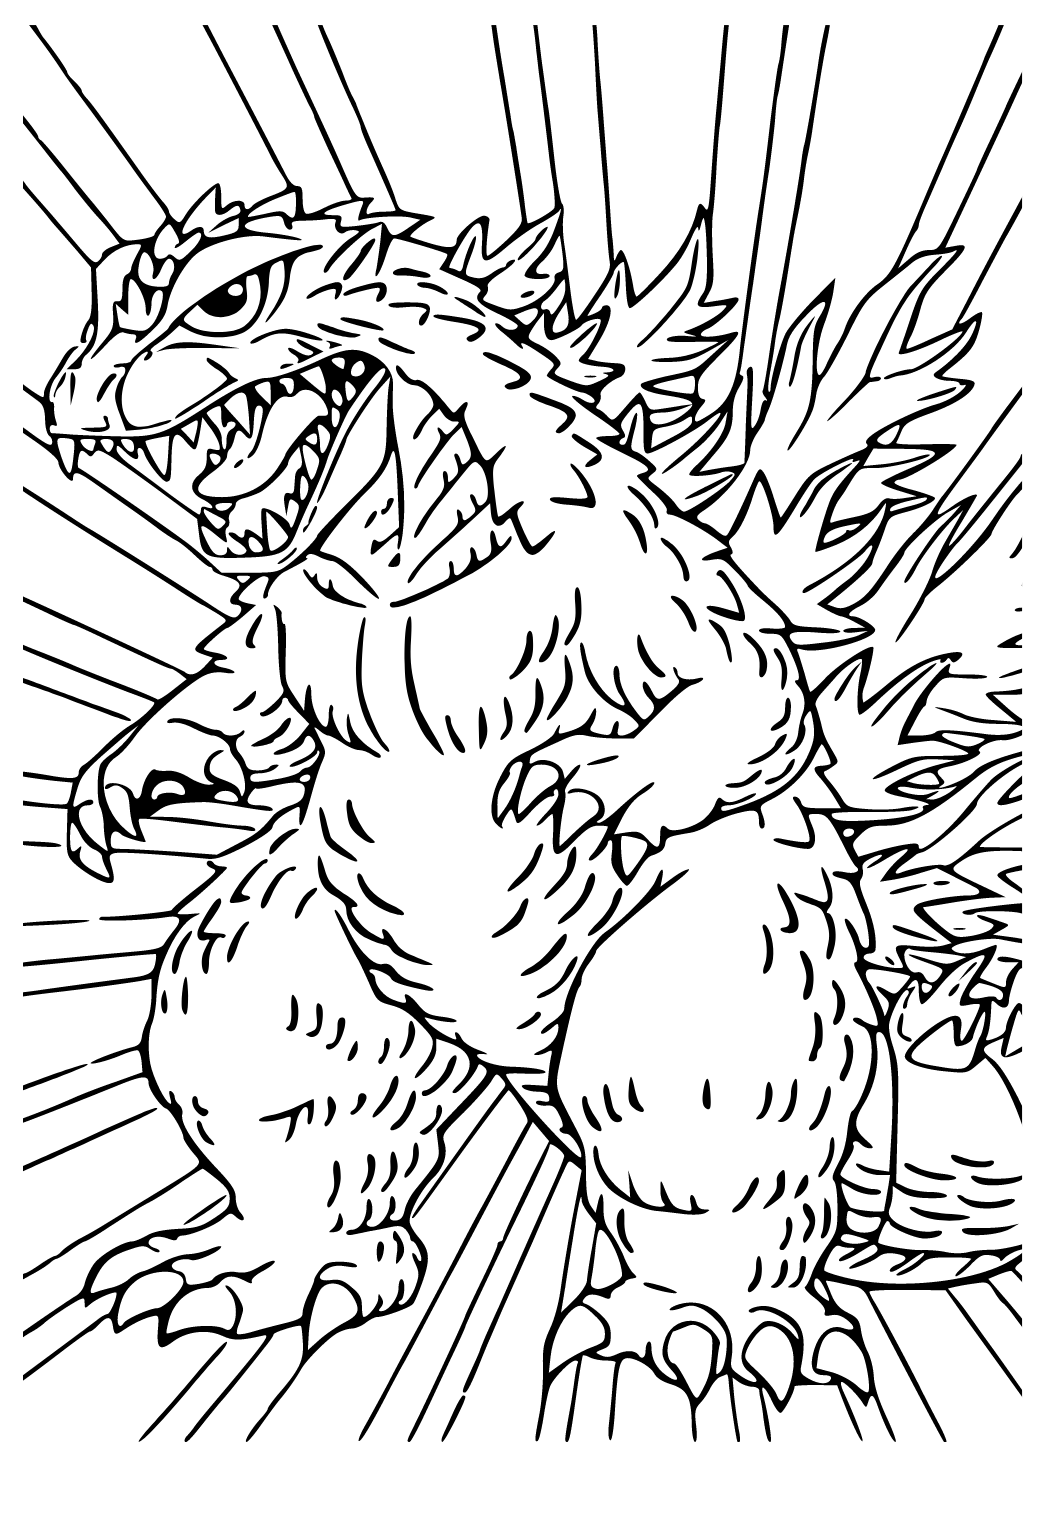 Godzilla King Of The Monsters Kết Xuất 3d Hình ảnh Sẵn có  Tải xuống Hình  ảnh Ngay bây giờ  Godzilla  Quái Vật Quái Vật Biểu tượng  Ký hiệu chữ  viết  iStock